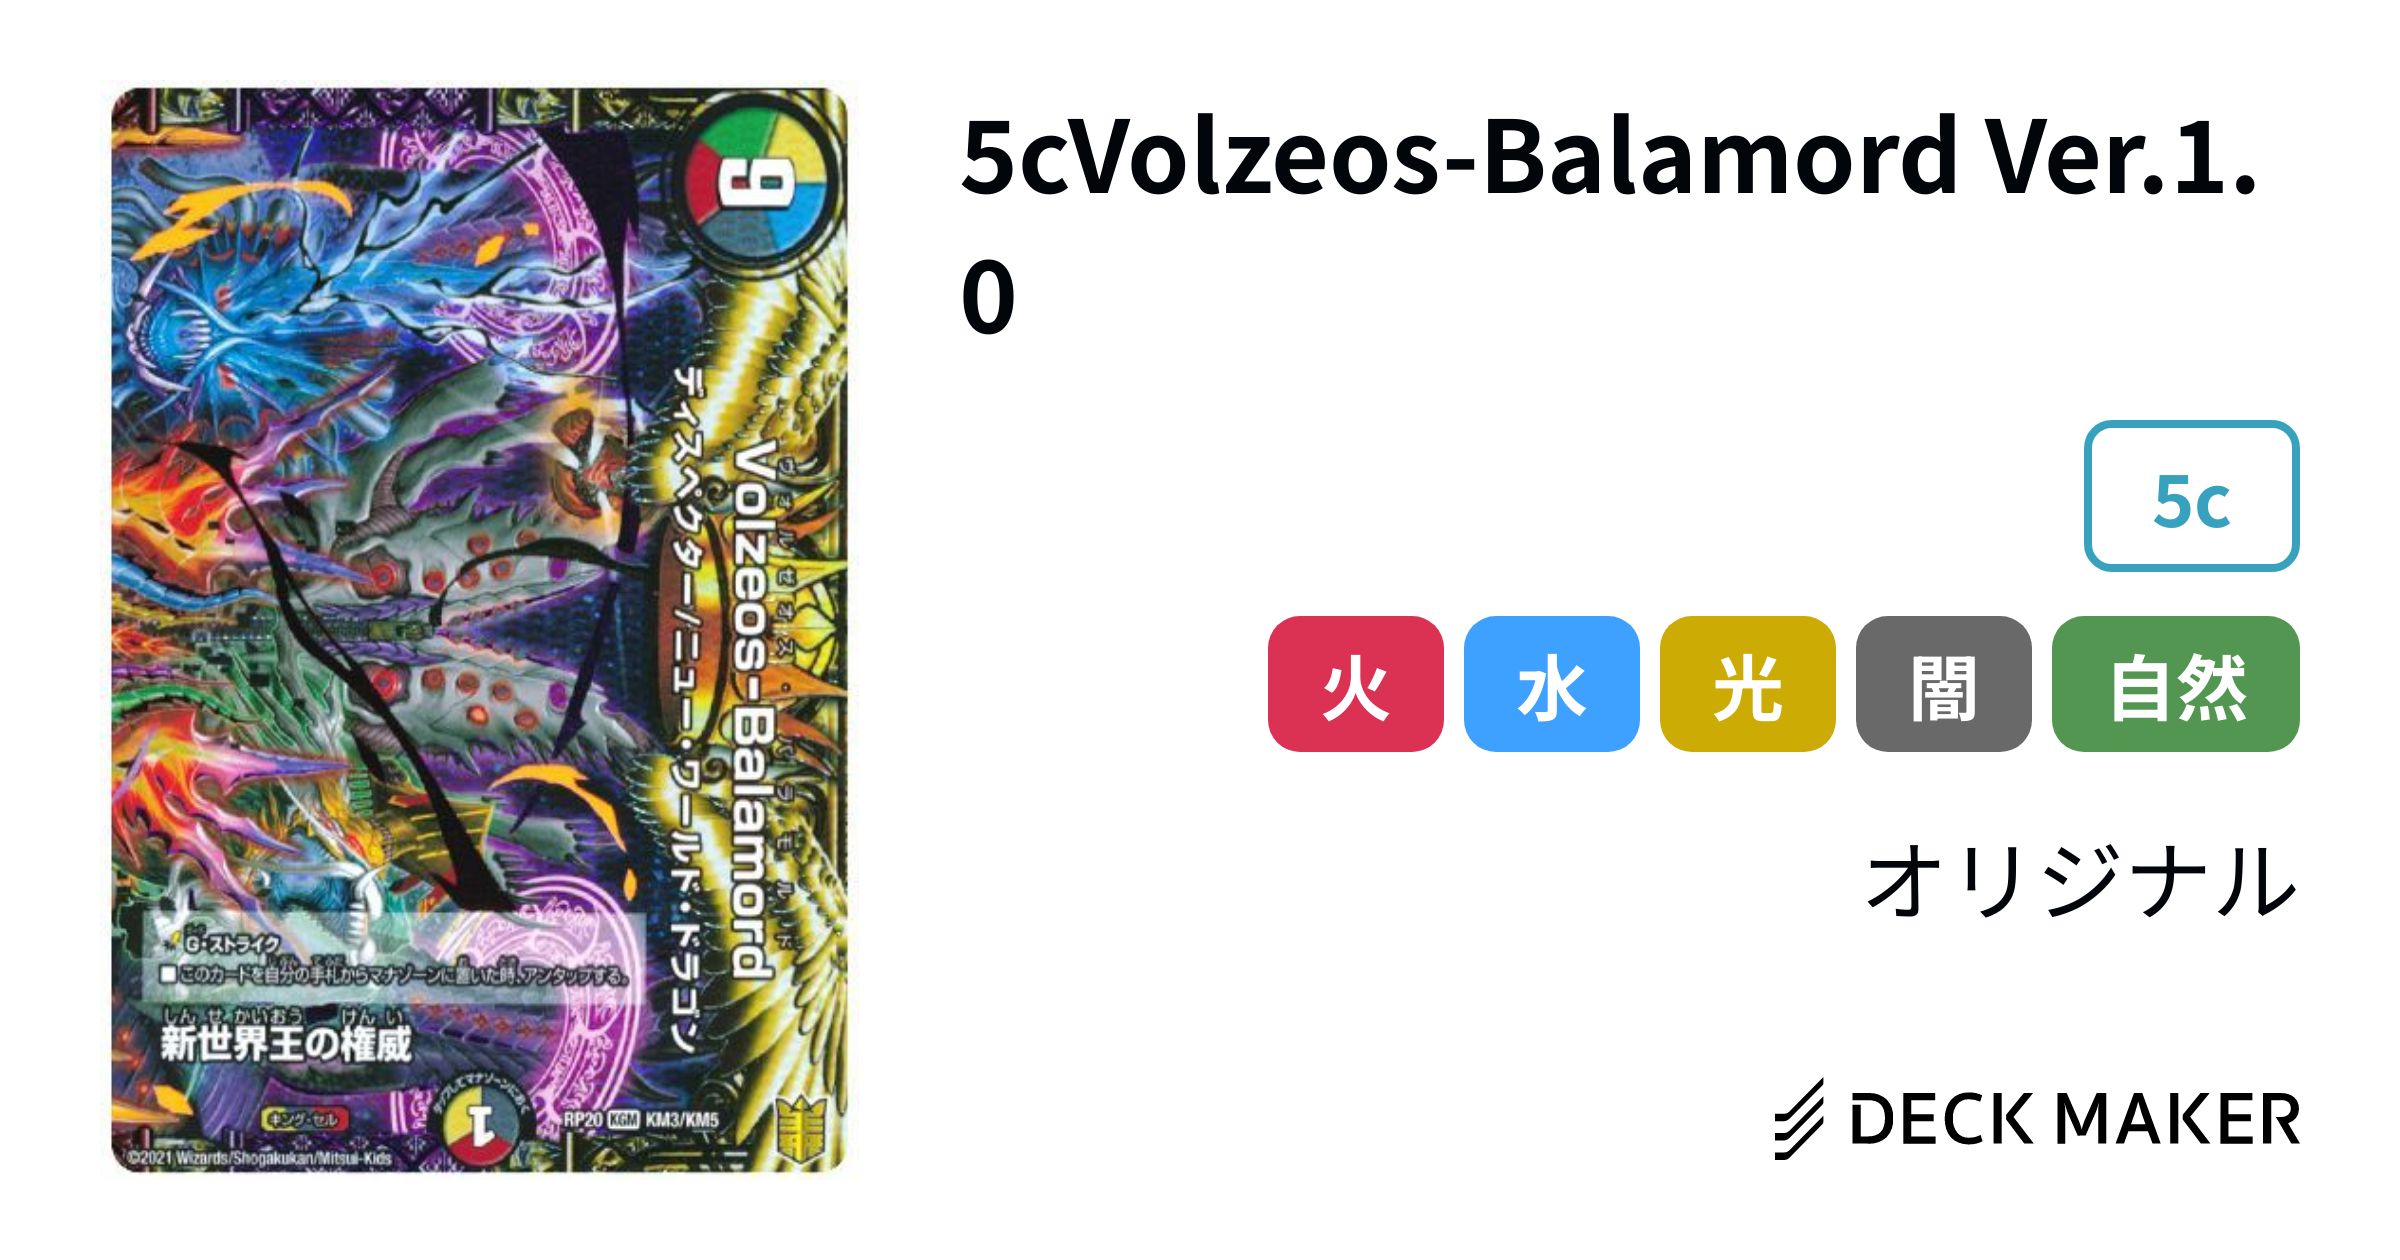 デュエルマスターズ 5cVolzeos-Balamord Ver.1.0 デッキレシピ詳細 